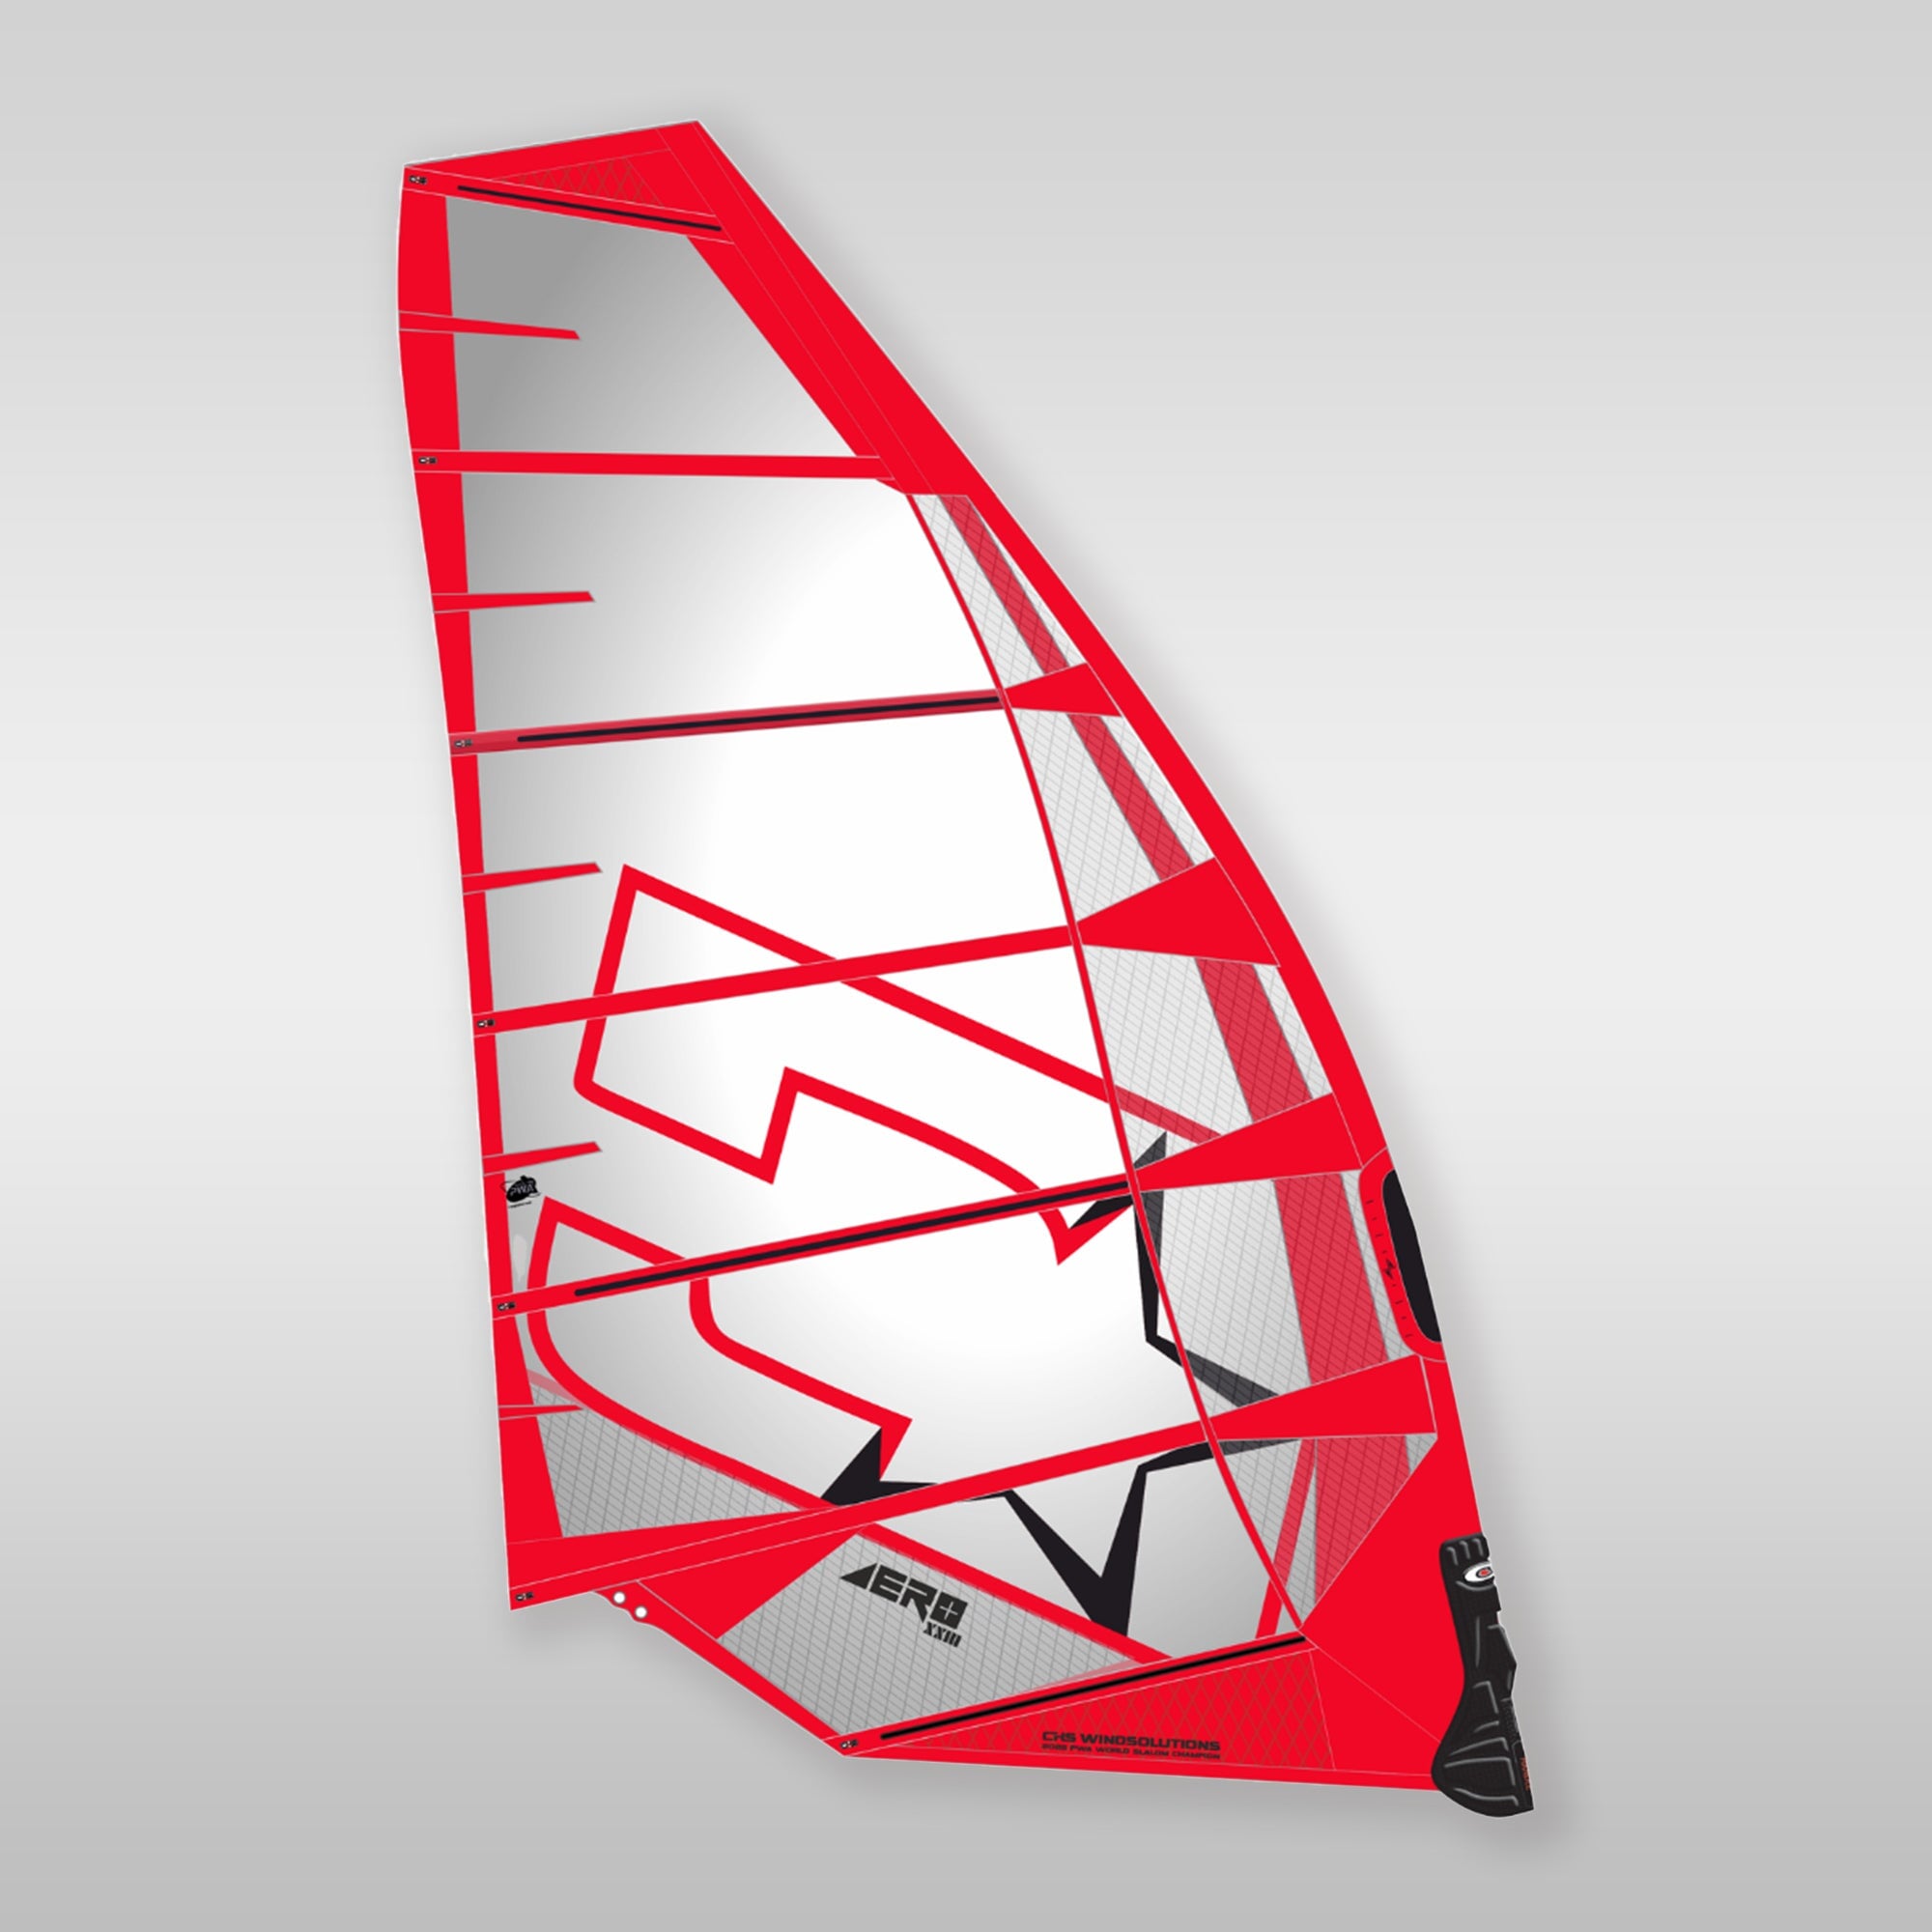 Windsurfshop windsurfwinkel windsurf-shop windsurf shop windsurfing shop windsurfing windsurfsegel sail Challenger sails aero fin